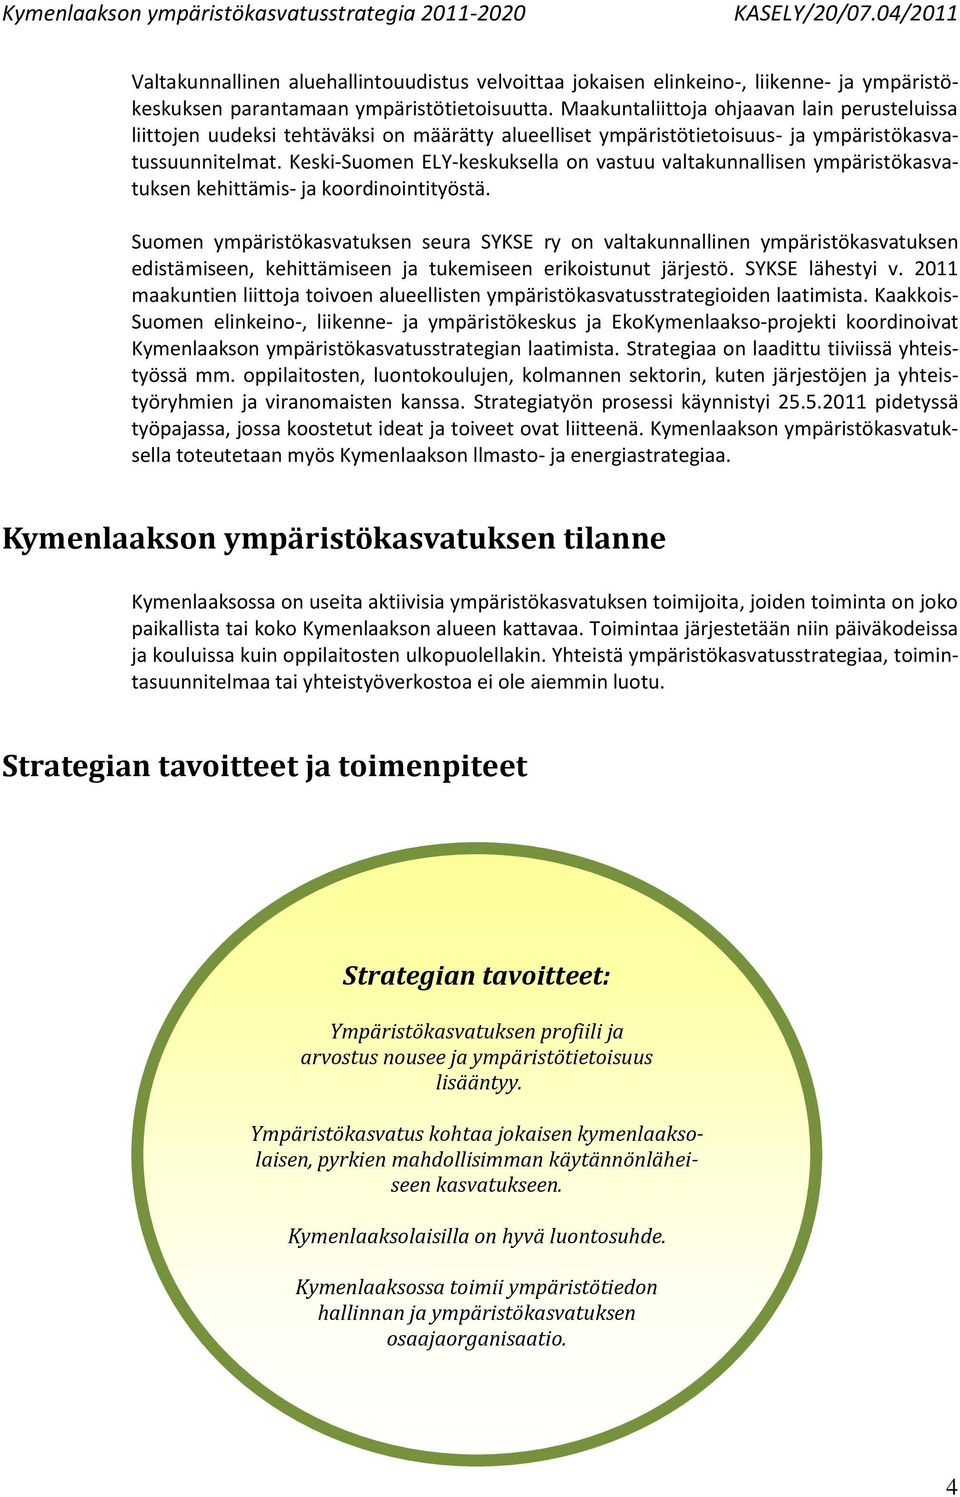 Keski-Suomen ELY-keskuksella on vastuu valtakunnallisen ympäristökasvatuksen kehittämis- ja koordinointityöstä.